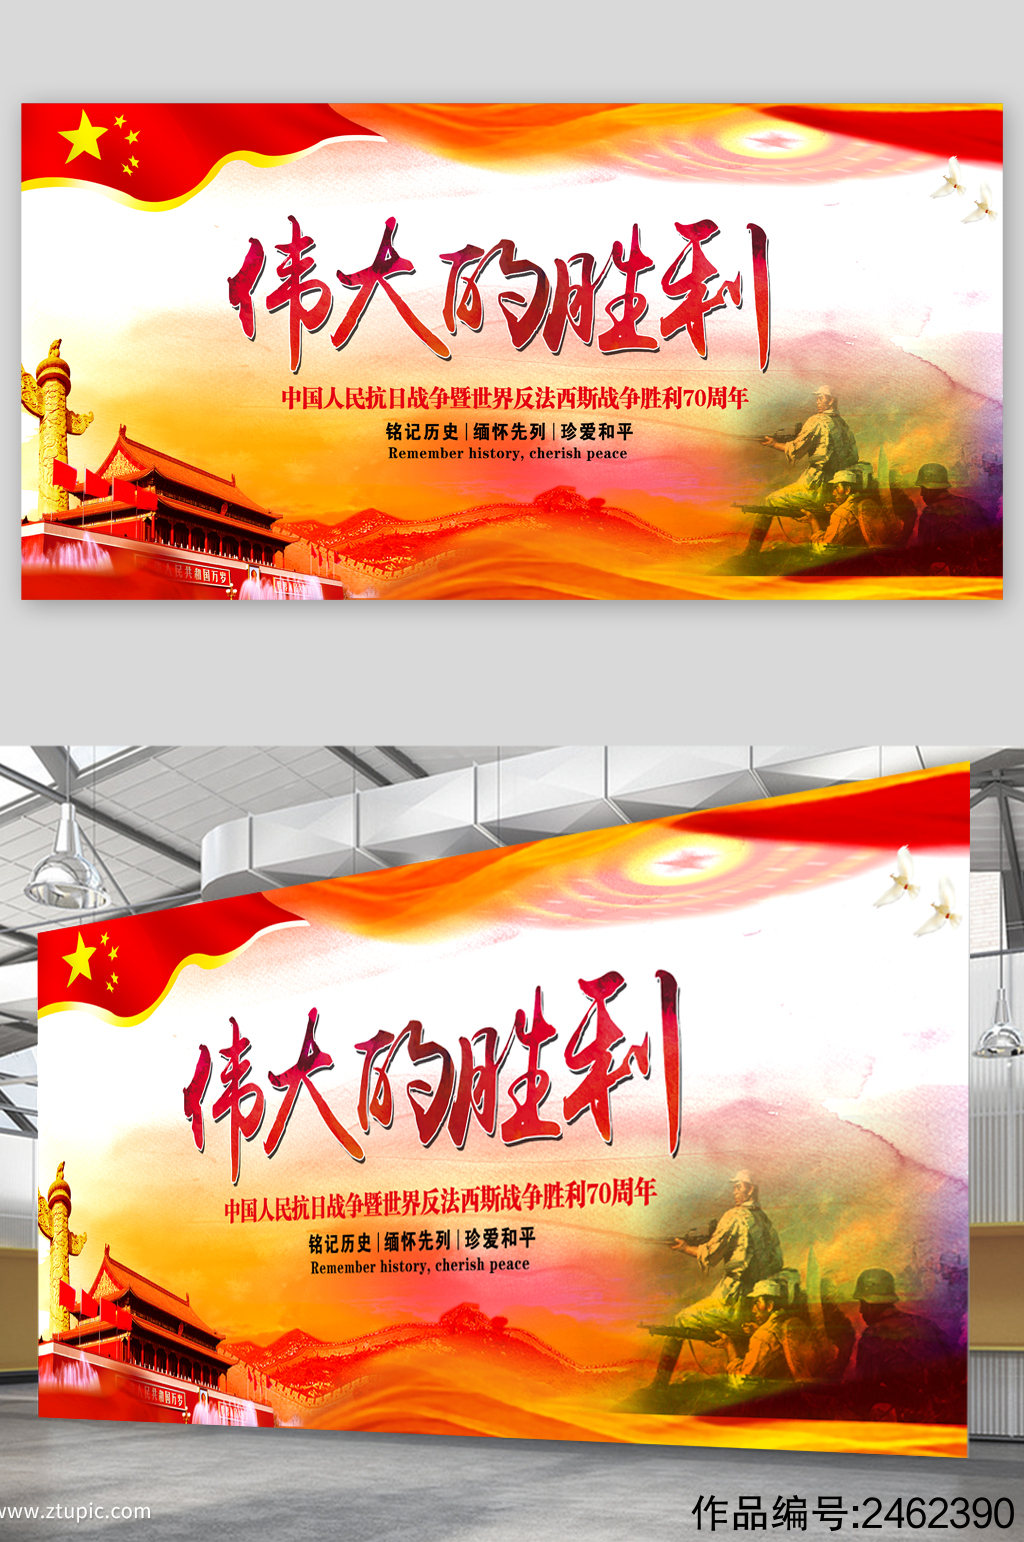 中国人民抗日战争胜利77周年纪念：铭记历史，珍爱和平，传承伟大精神